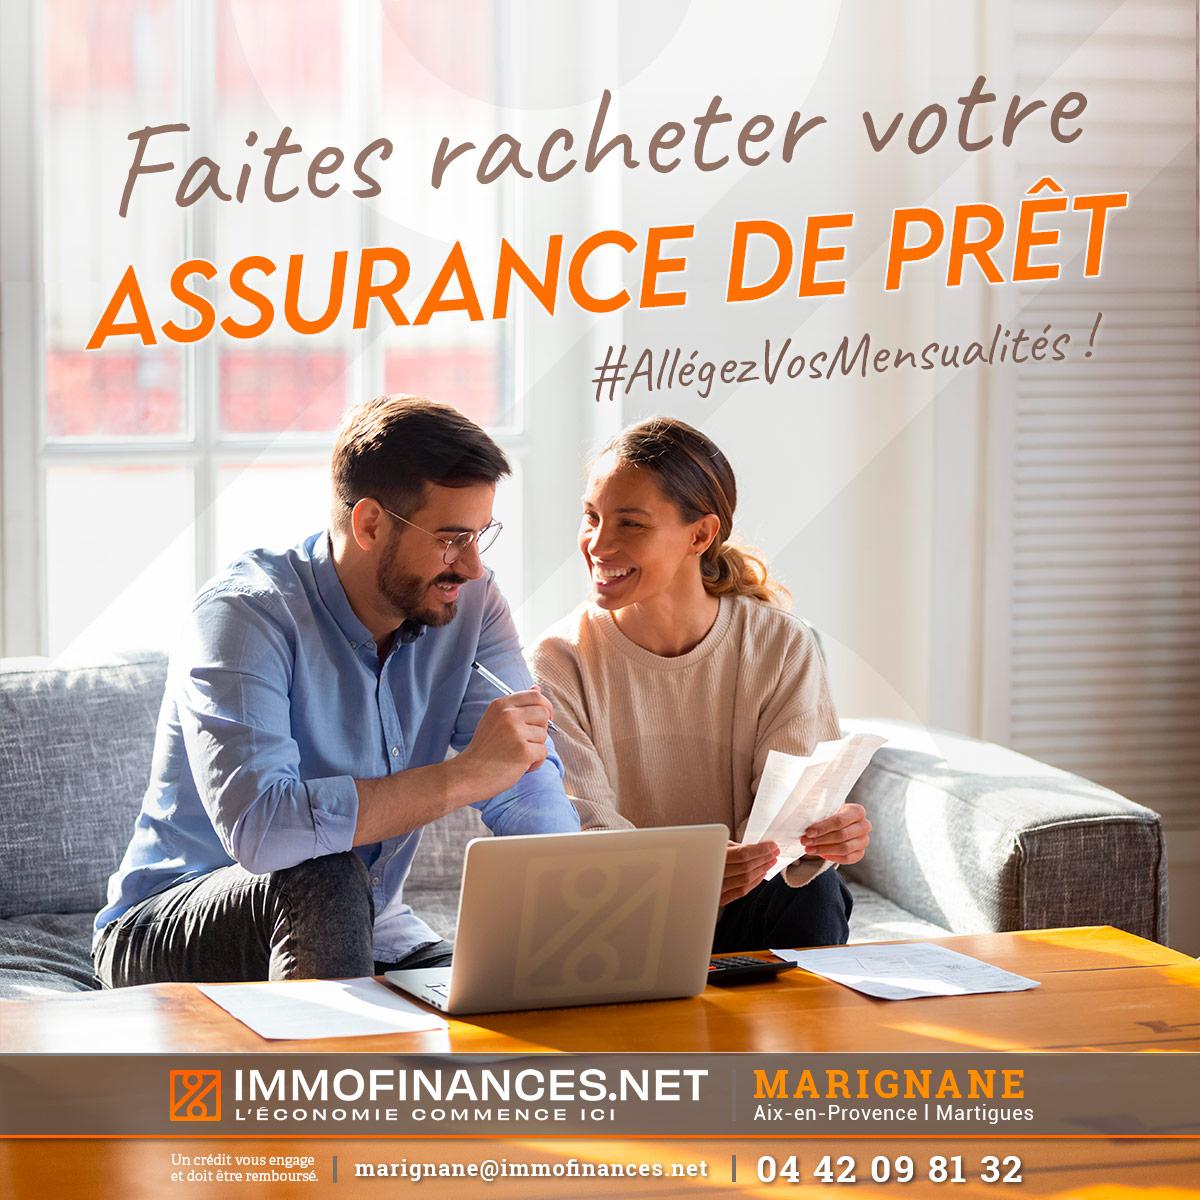 immofinances.net-MARIGNANE-13-courtier-pret-immobilier-assurance-credit